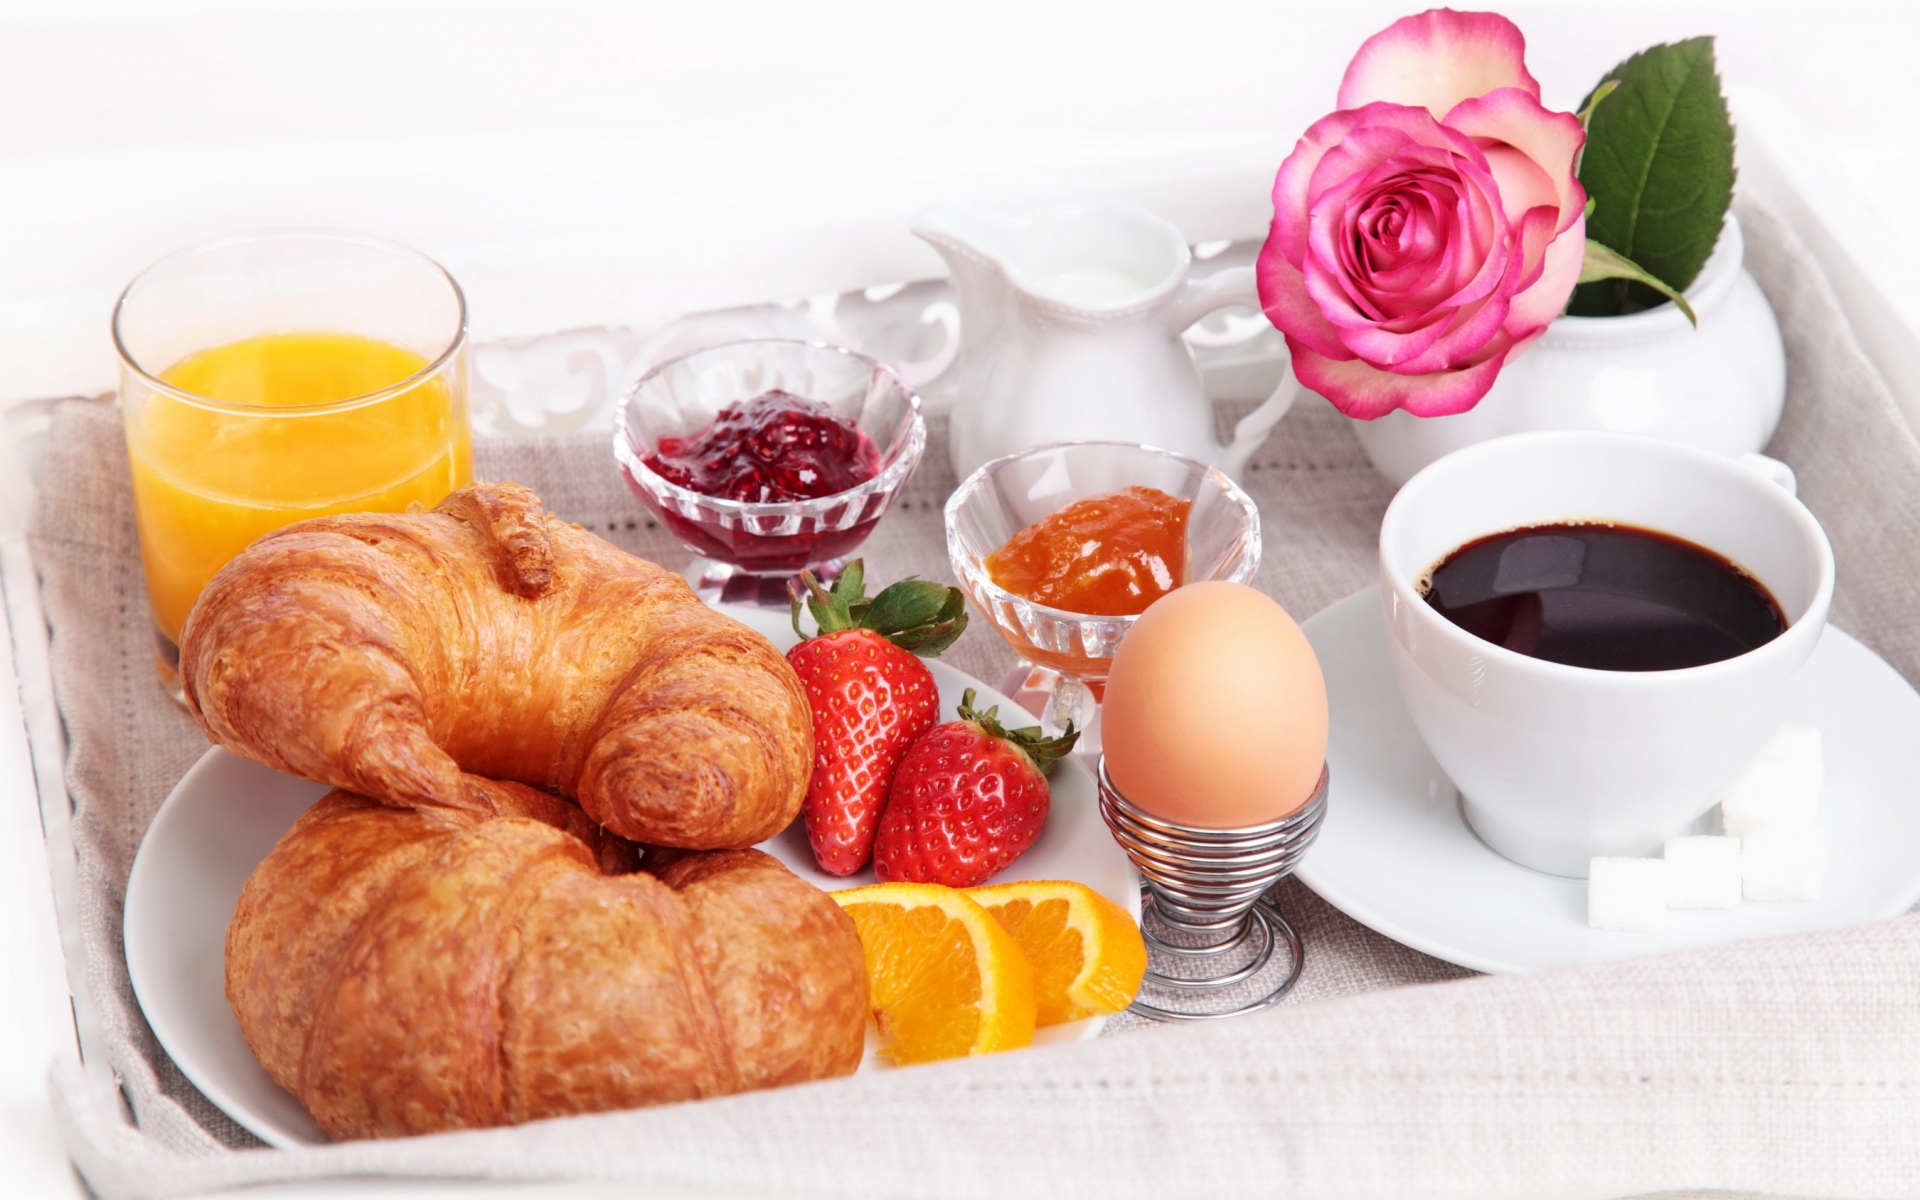 Картинки Завтрак, кофе, яйца, круассаны фото и обои на рабочий стол